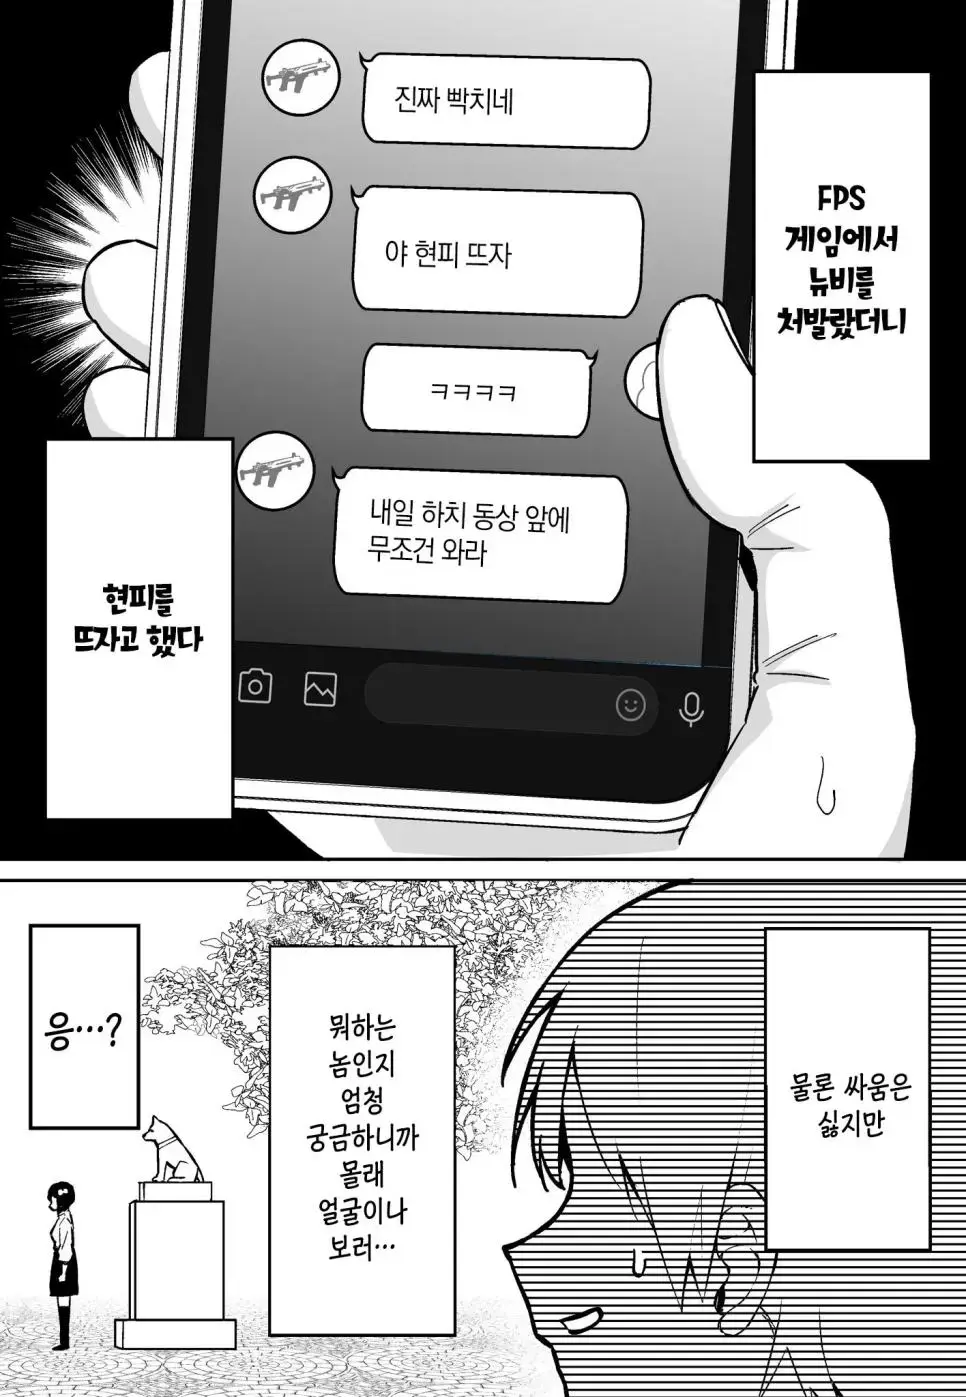 ㅆㄷ)뉴비랑 현피뜨는 만화 | mbong.kr 엠봉